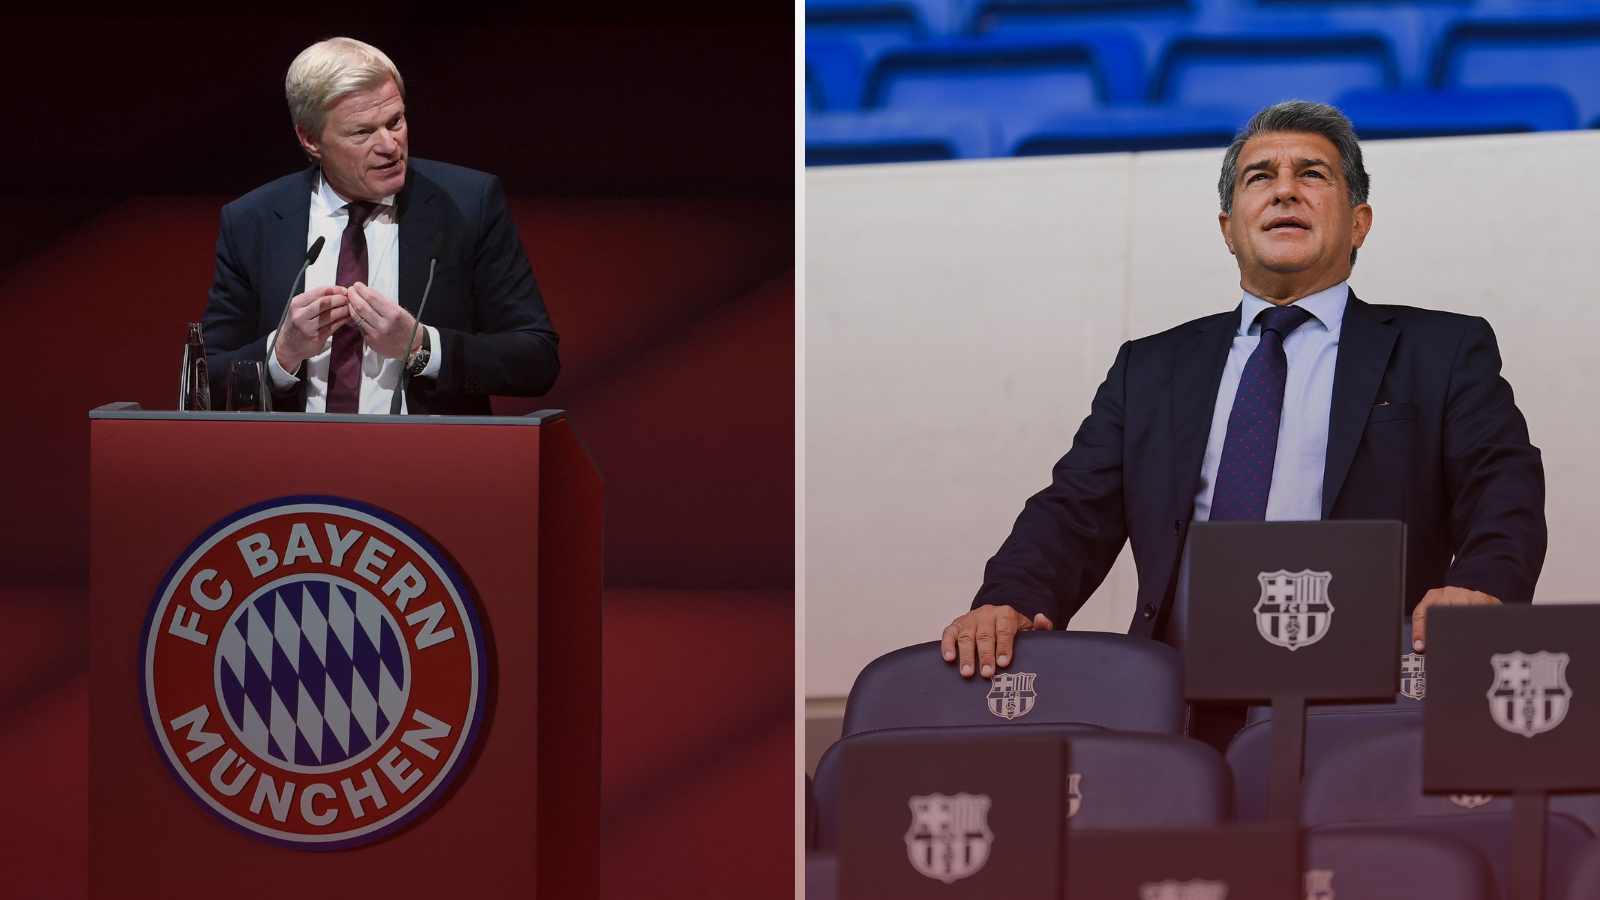 La relación entre la directiva de FC Bayern München y la de FC Barcelona no sería la mejor. Fotos: Getty Images.